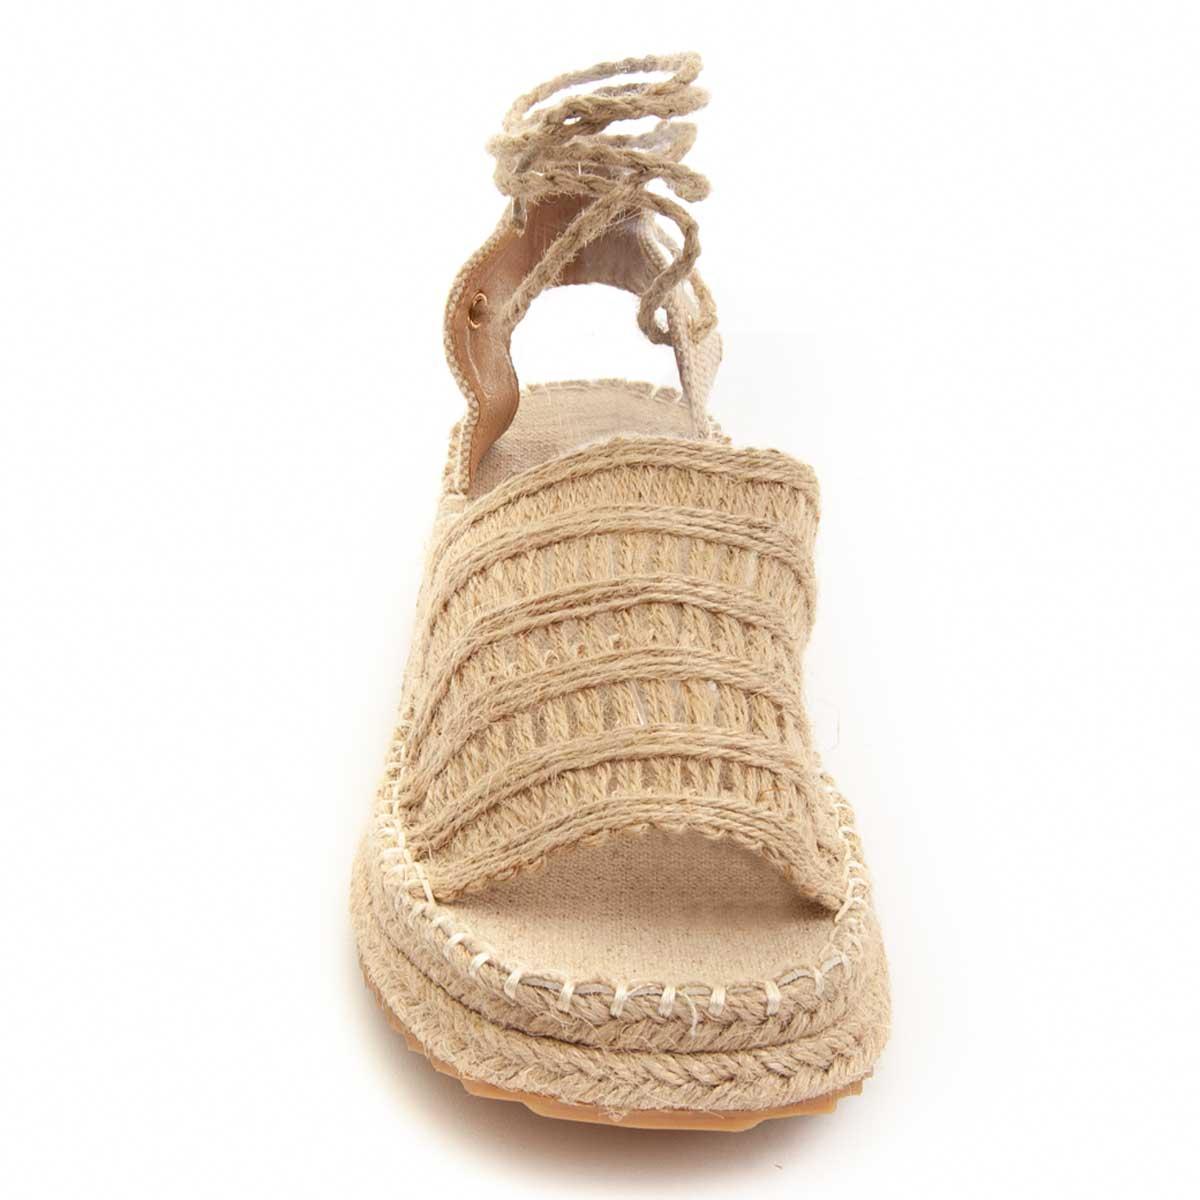 Sandalias de Cuña - Beige - Altura: 3 cm